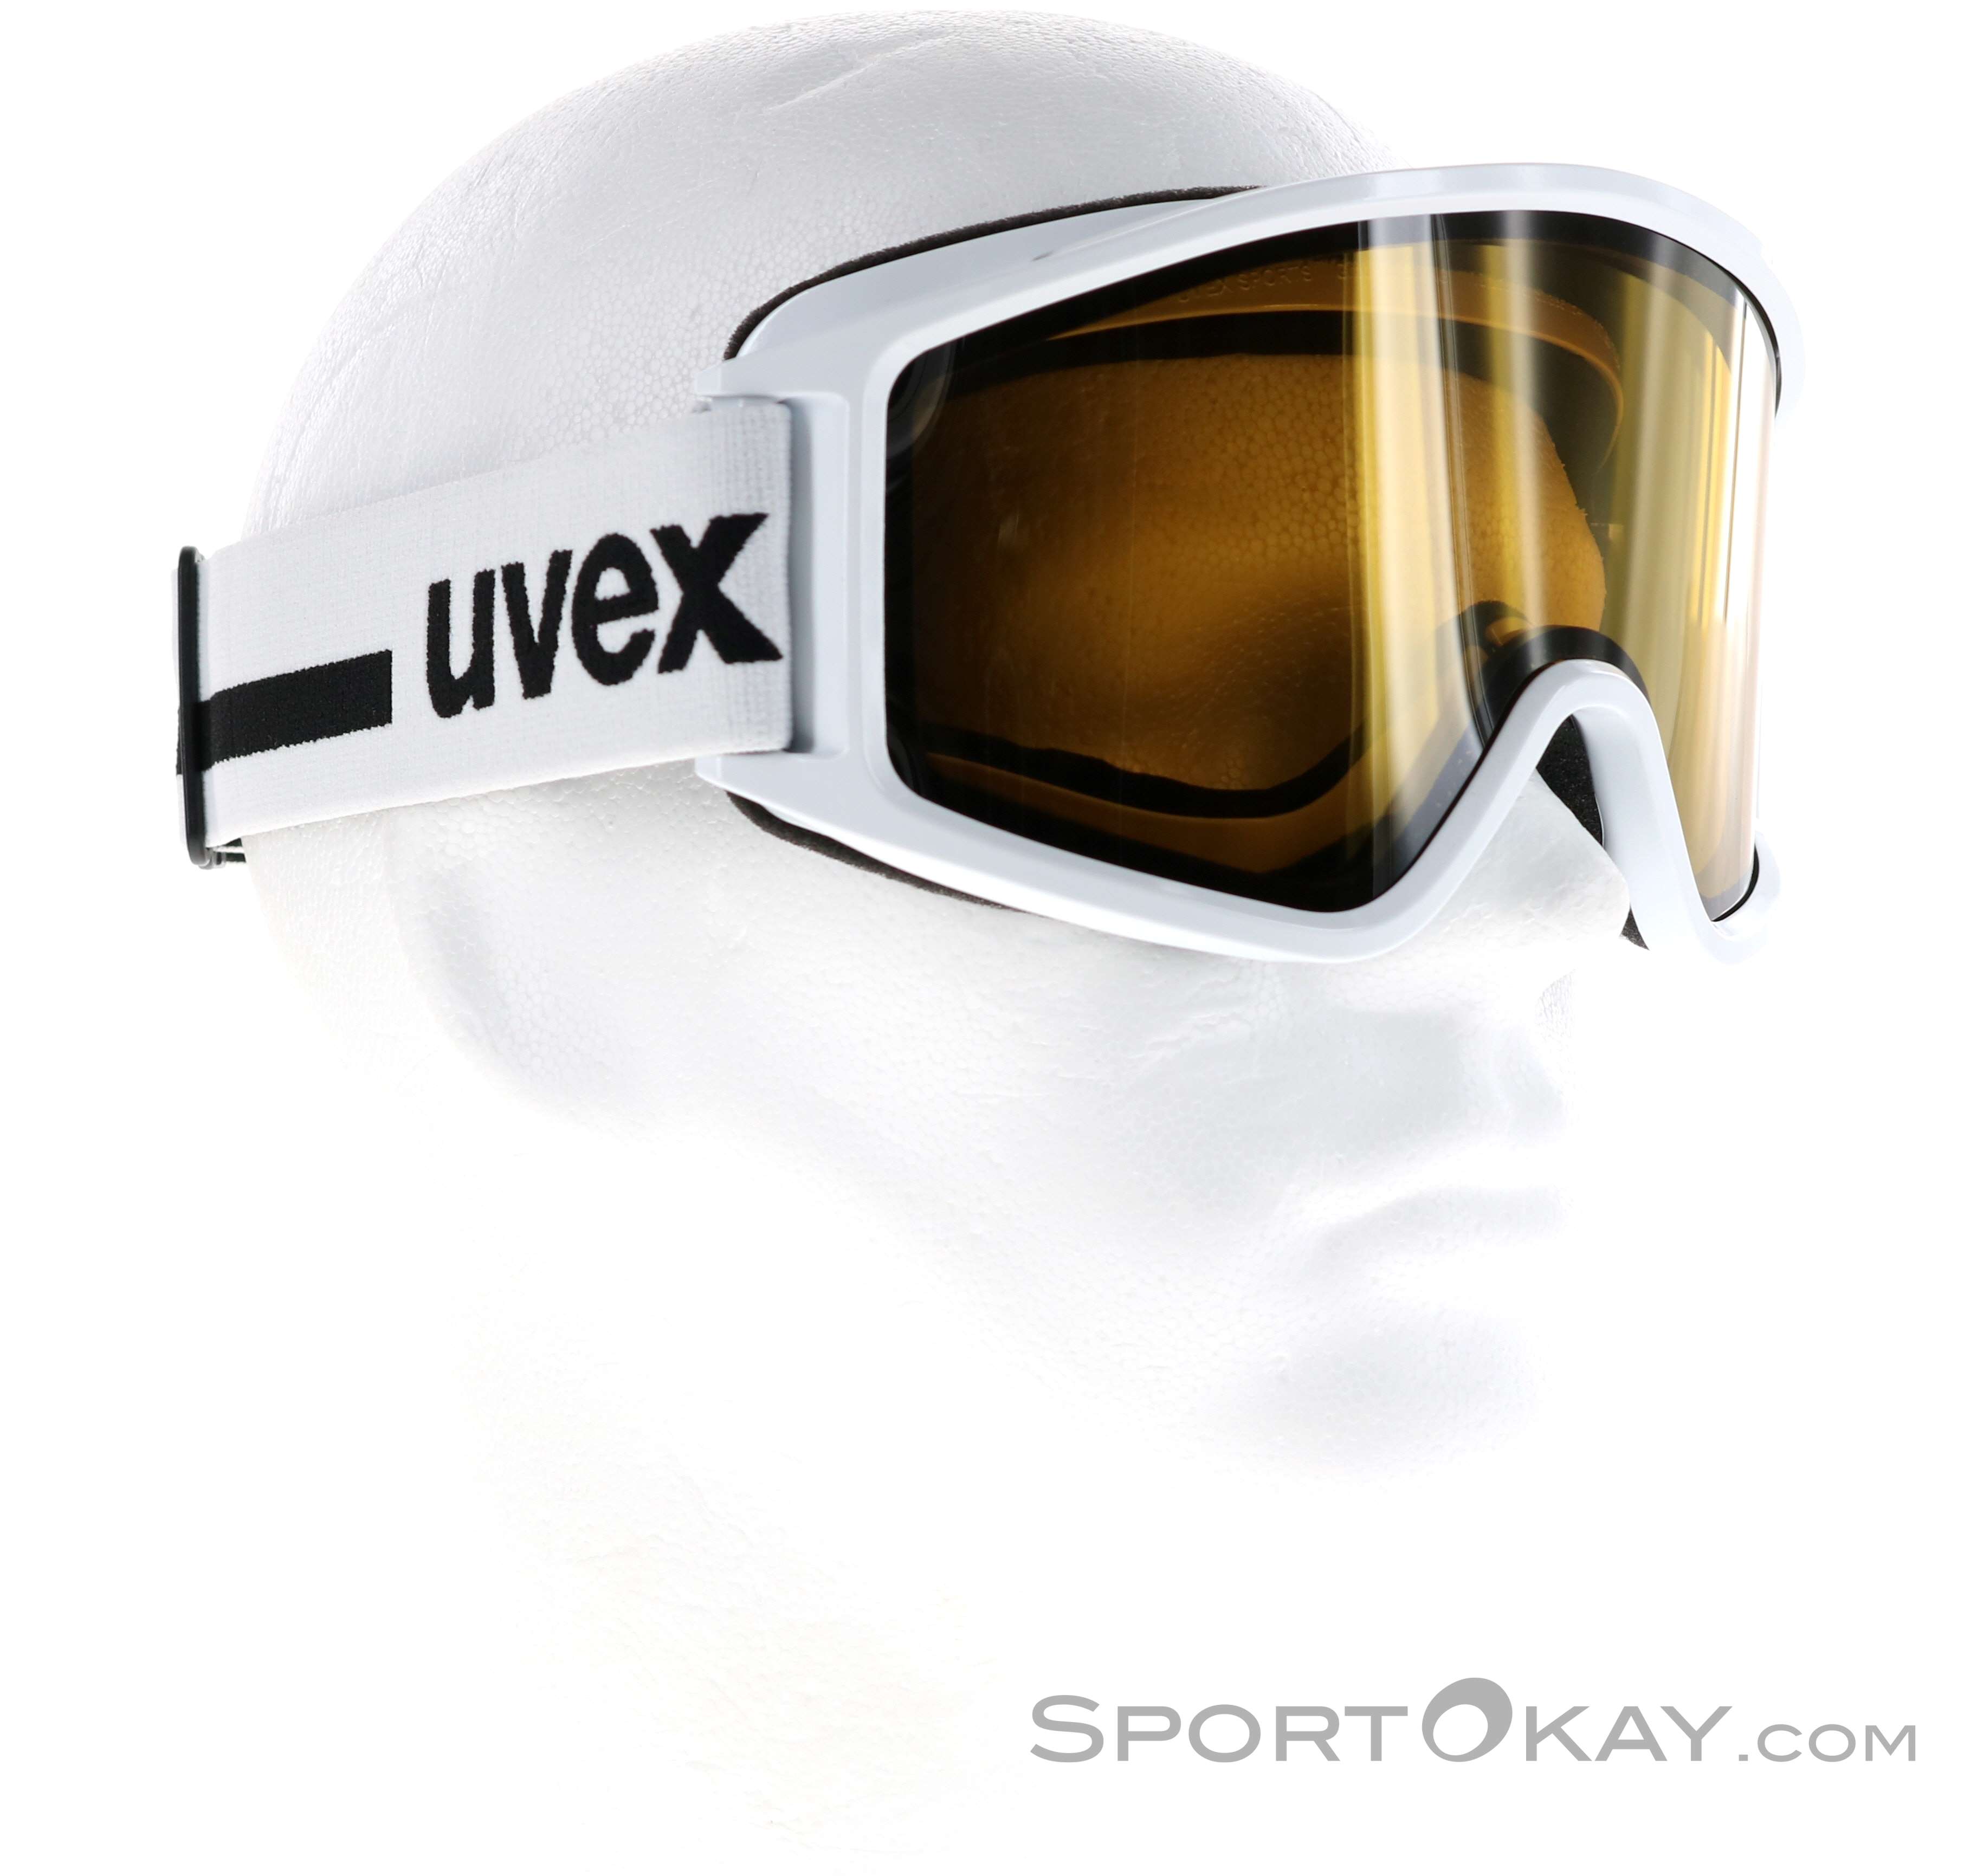 Uvex g.gl 3000 Top Maschera da Sci - Maschere da sci - Occhiali